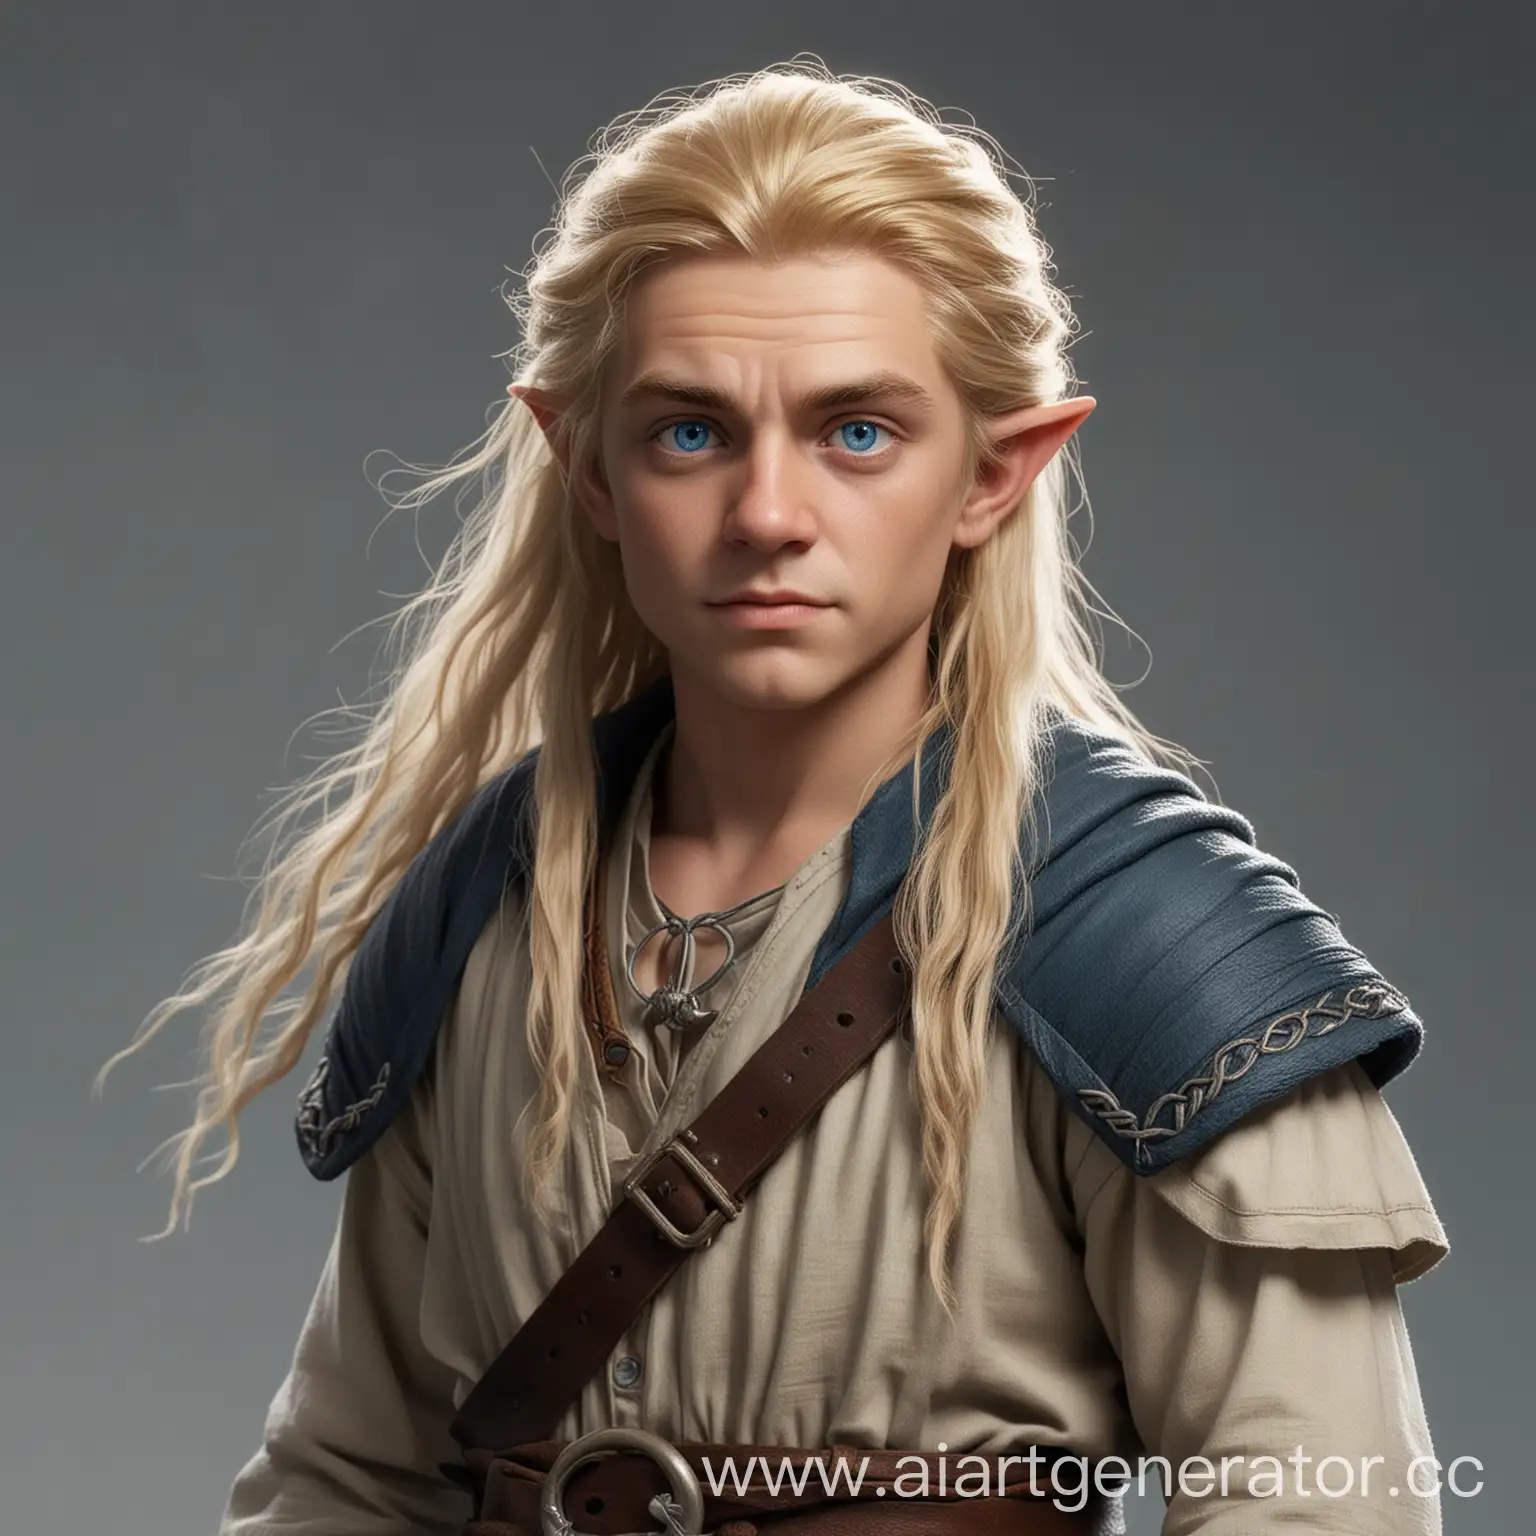 друид моряк полурослик мужчина русые волосы голубые глаза полный рост
